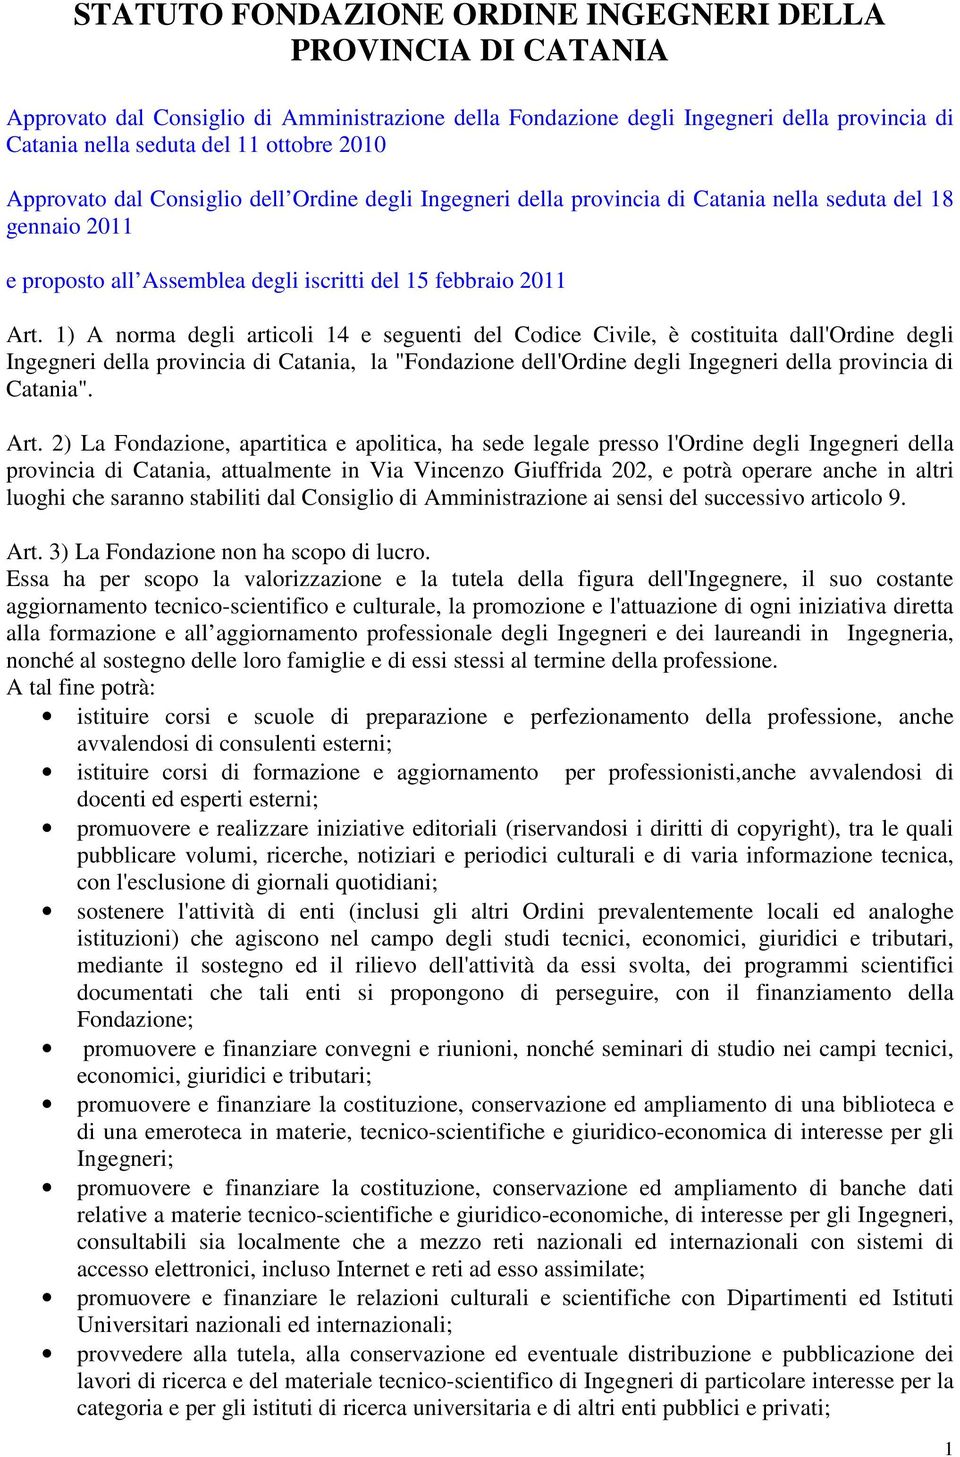 1) A norma degli articoli 14 e seguenti del Codice Civile, è costituita dall'ordine degli Ingegneri della provincia di Catania, la "Fondazione dell'ordine degli Ingegneri della provincia di Catania".